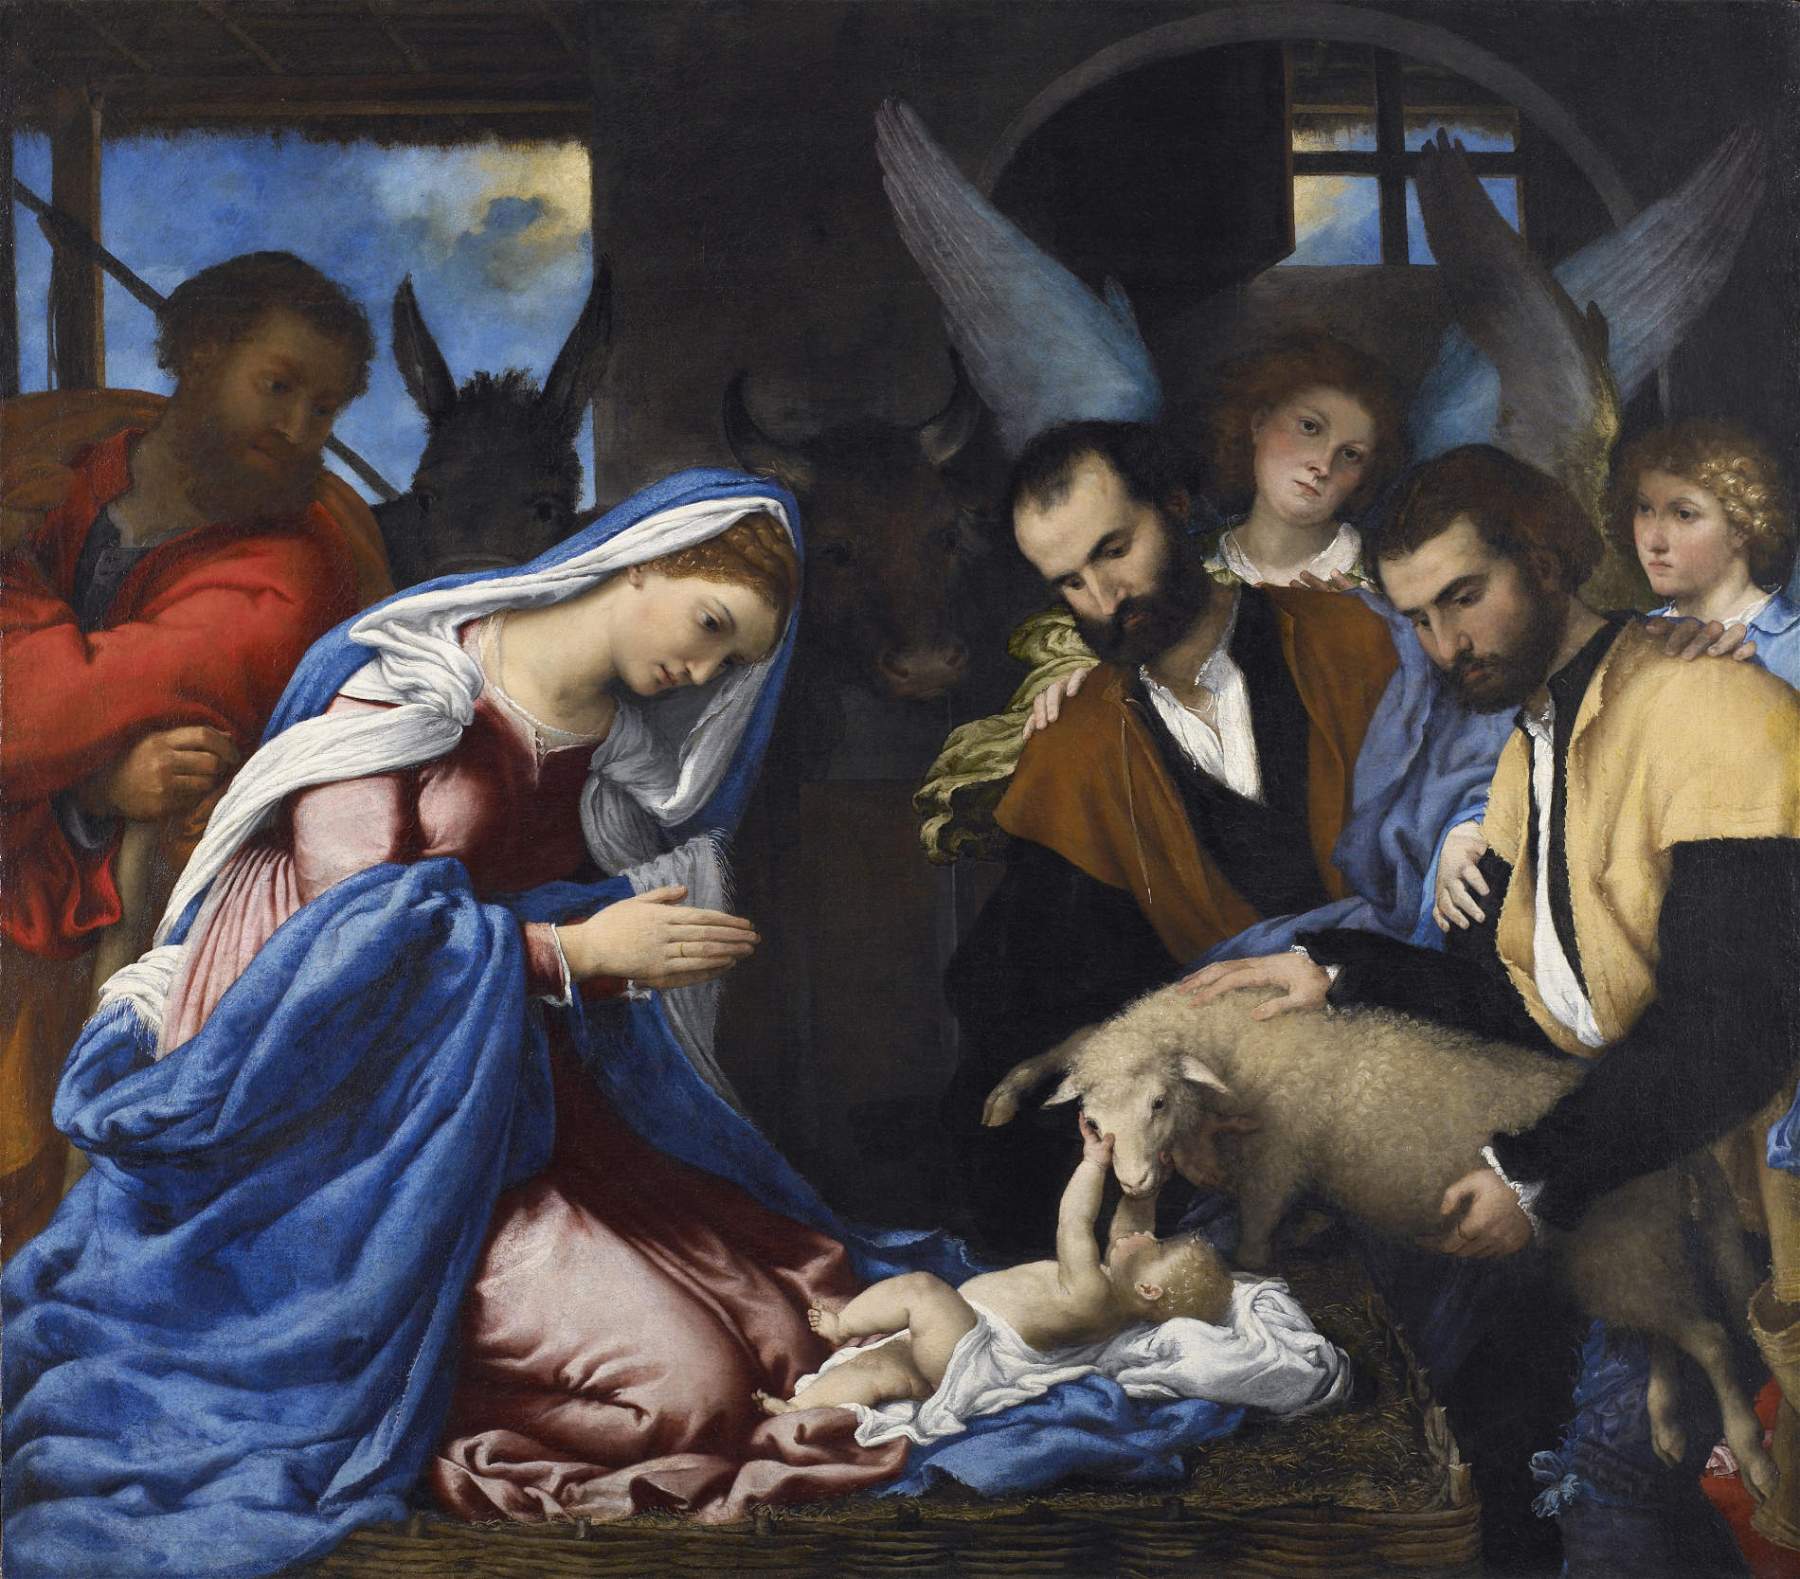  Brescia, at the Pinacoteca Tosio Martinengo Lorenzo Lotto and the masters of sixteenth-century Brescia